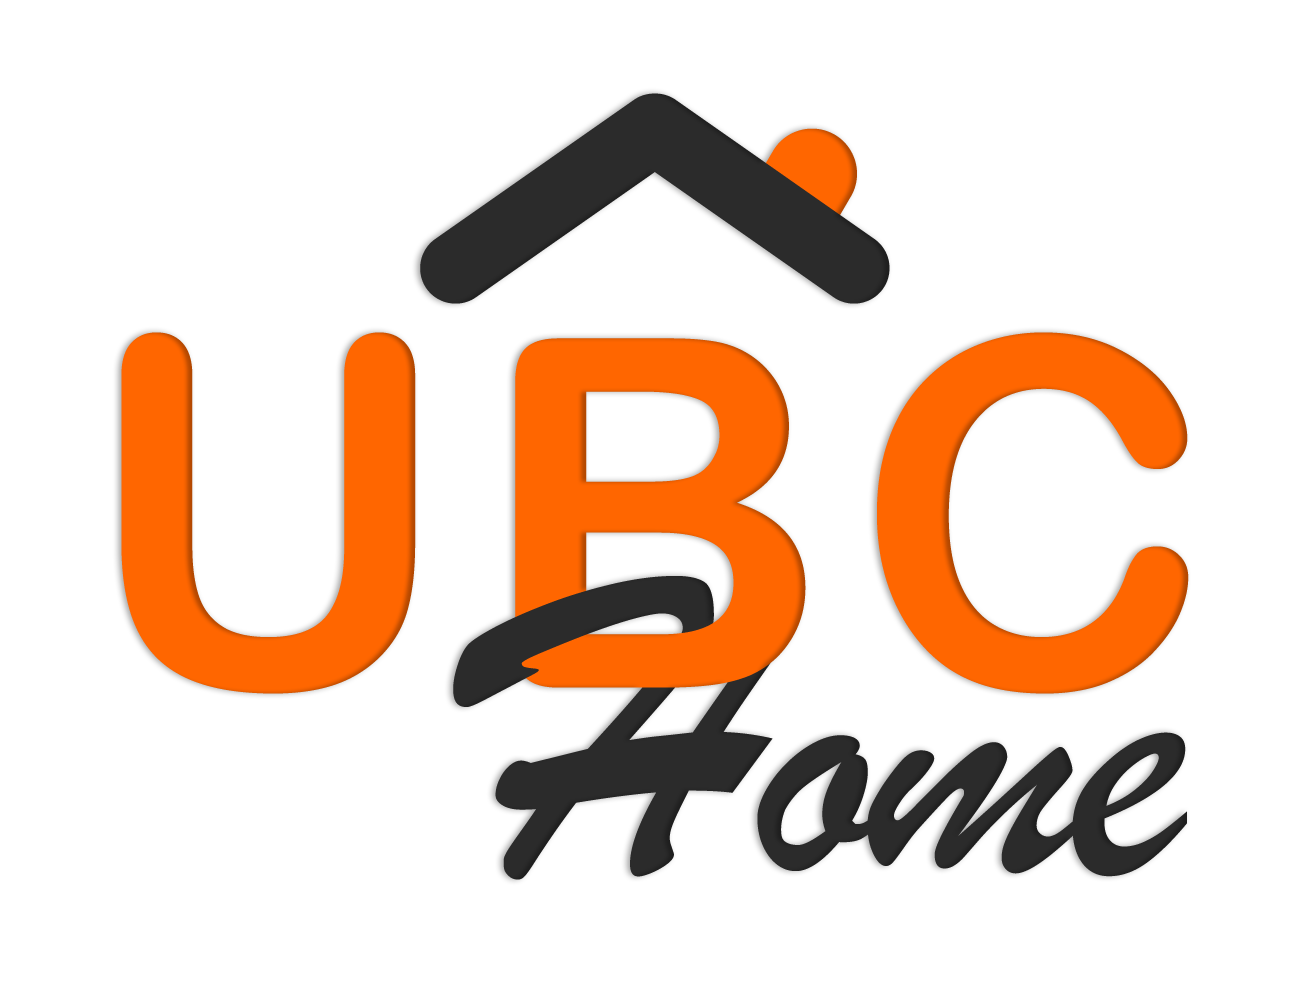 UBC Ana Sayfası - Mobilya ve aksesuarlar için